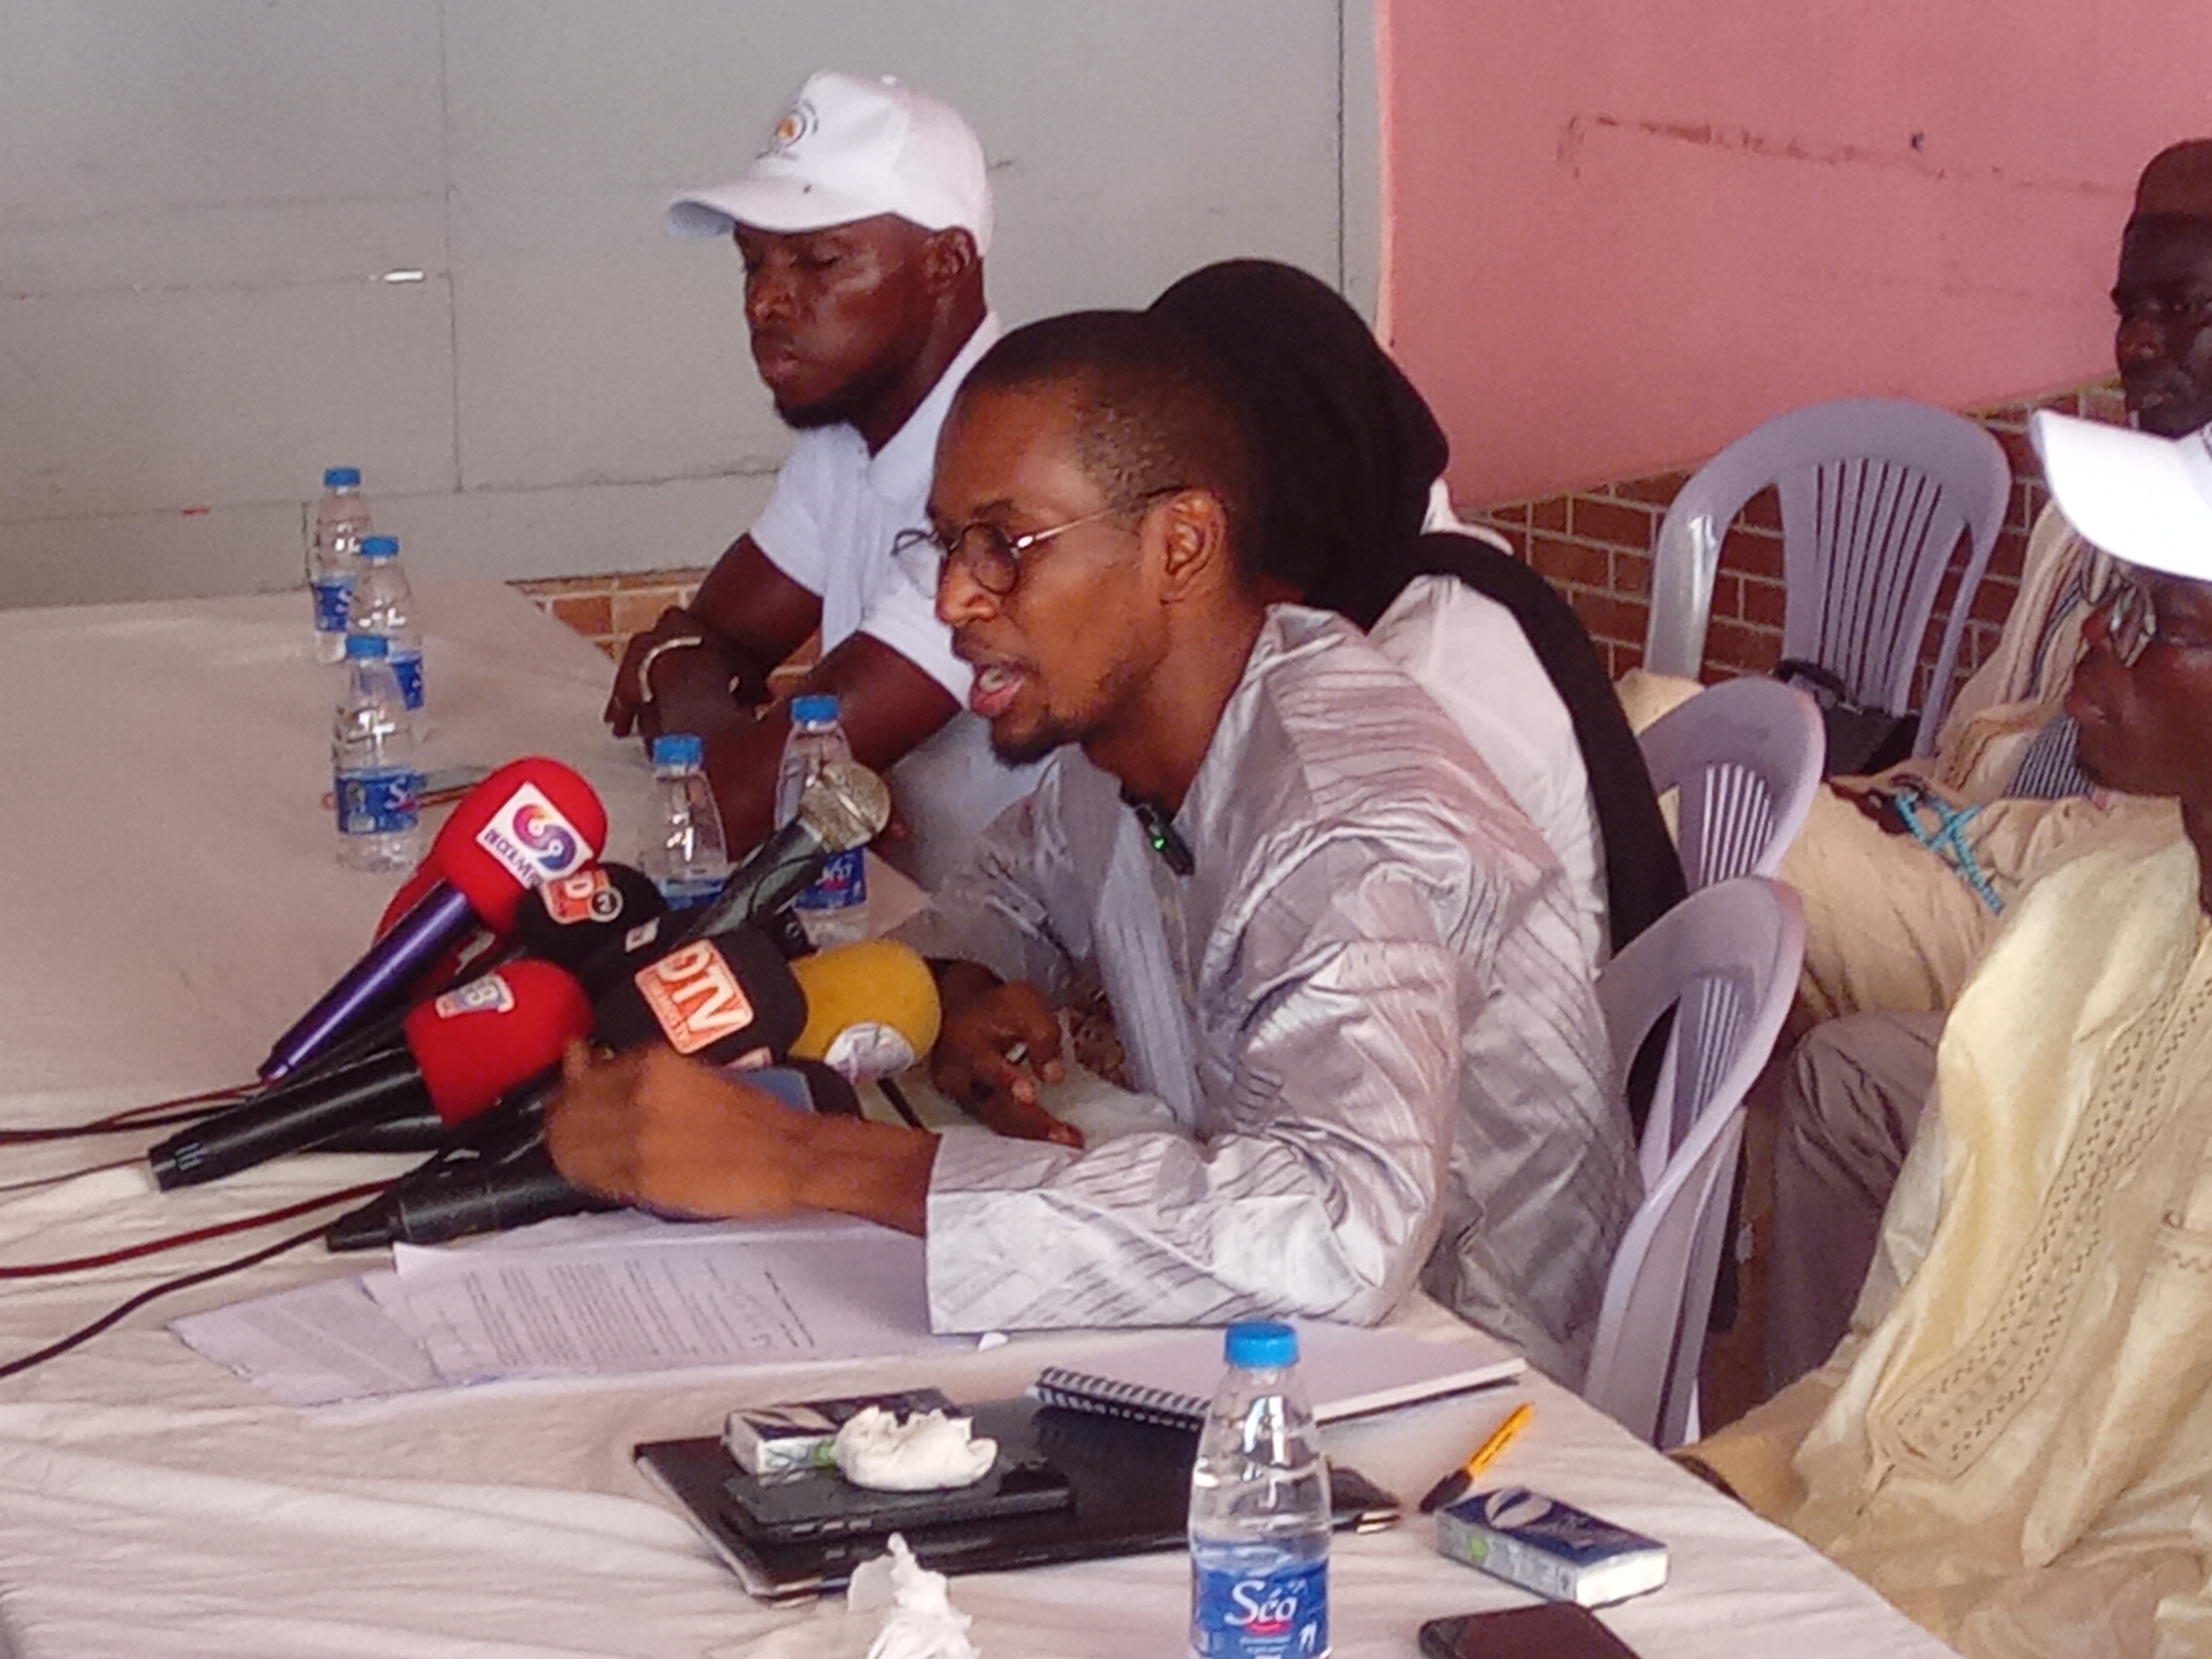 Lancement d'un mouvement national: l’ex-capitaine Touré s'engage à "réconcilier l'homme avec sa patrie"